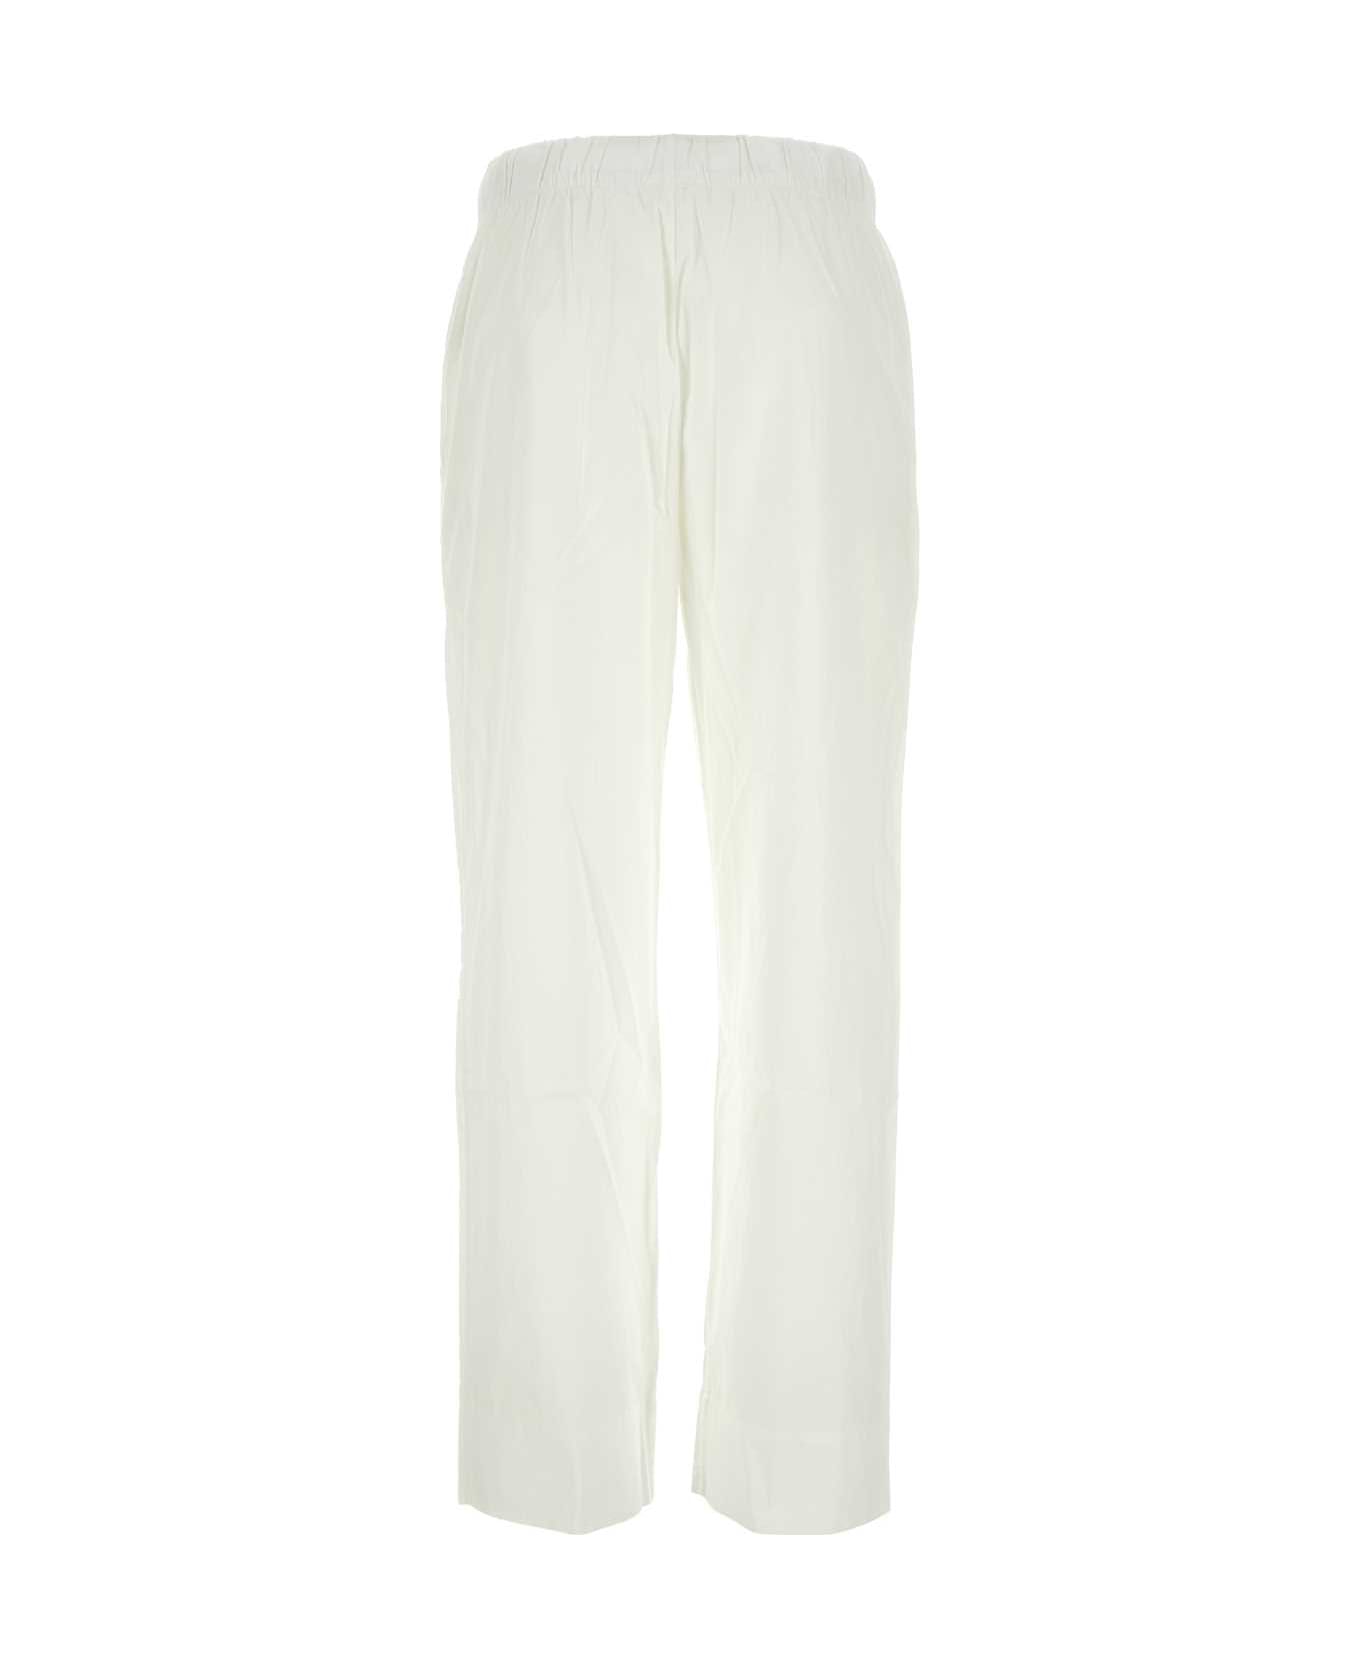 Tekla White Cotton Pyjama Pant - ALABASTERWHITE